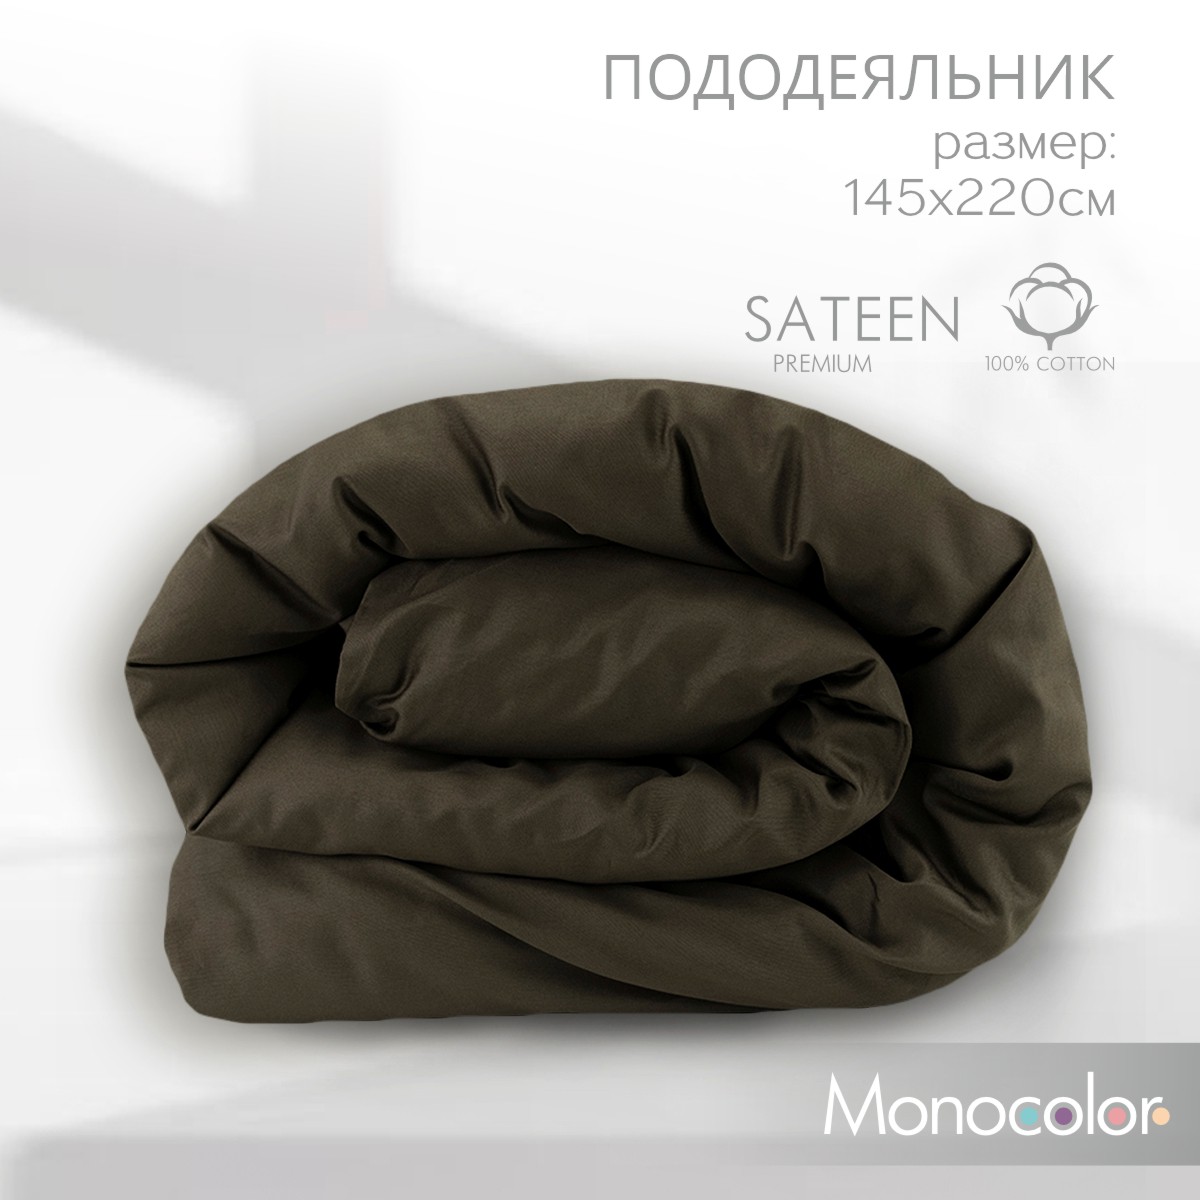 Пододеяльник Monochrome сатин 1,5 спальный 145х220 см коричневый